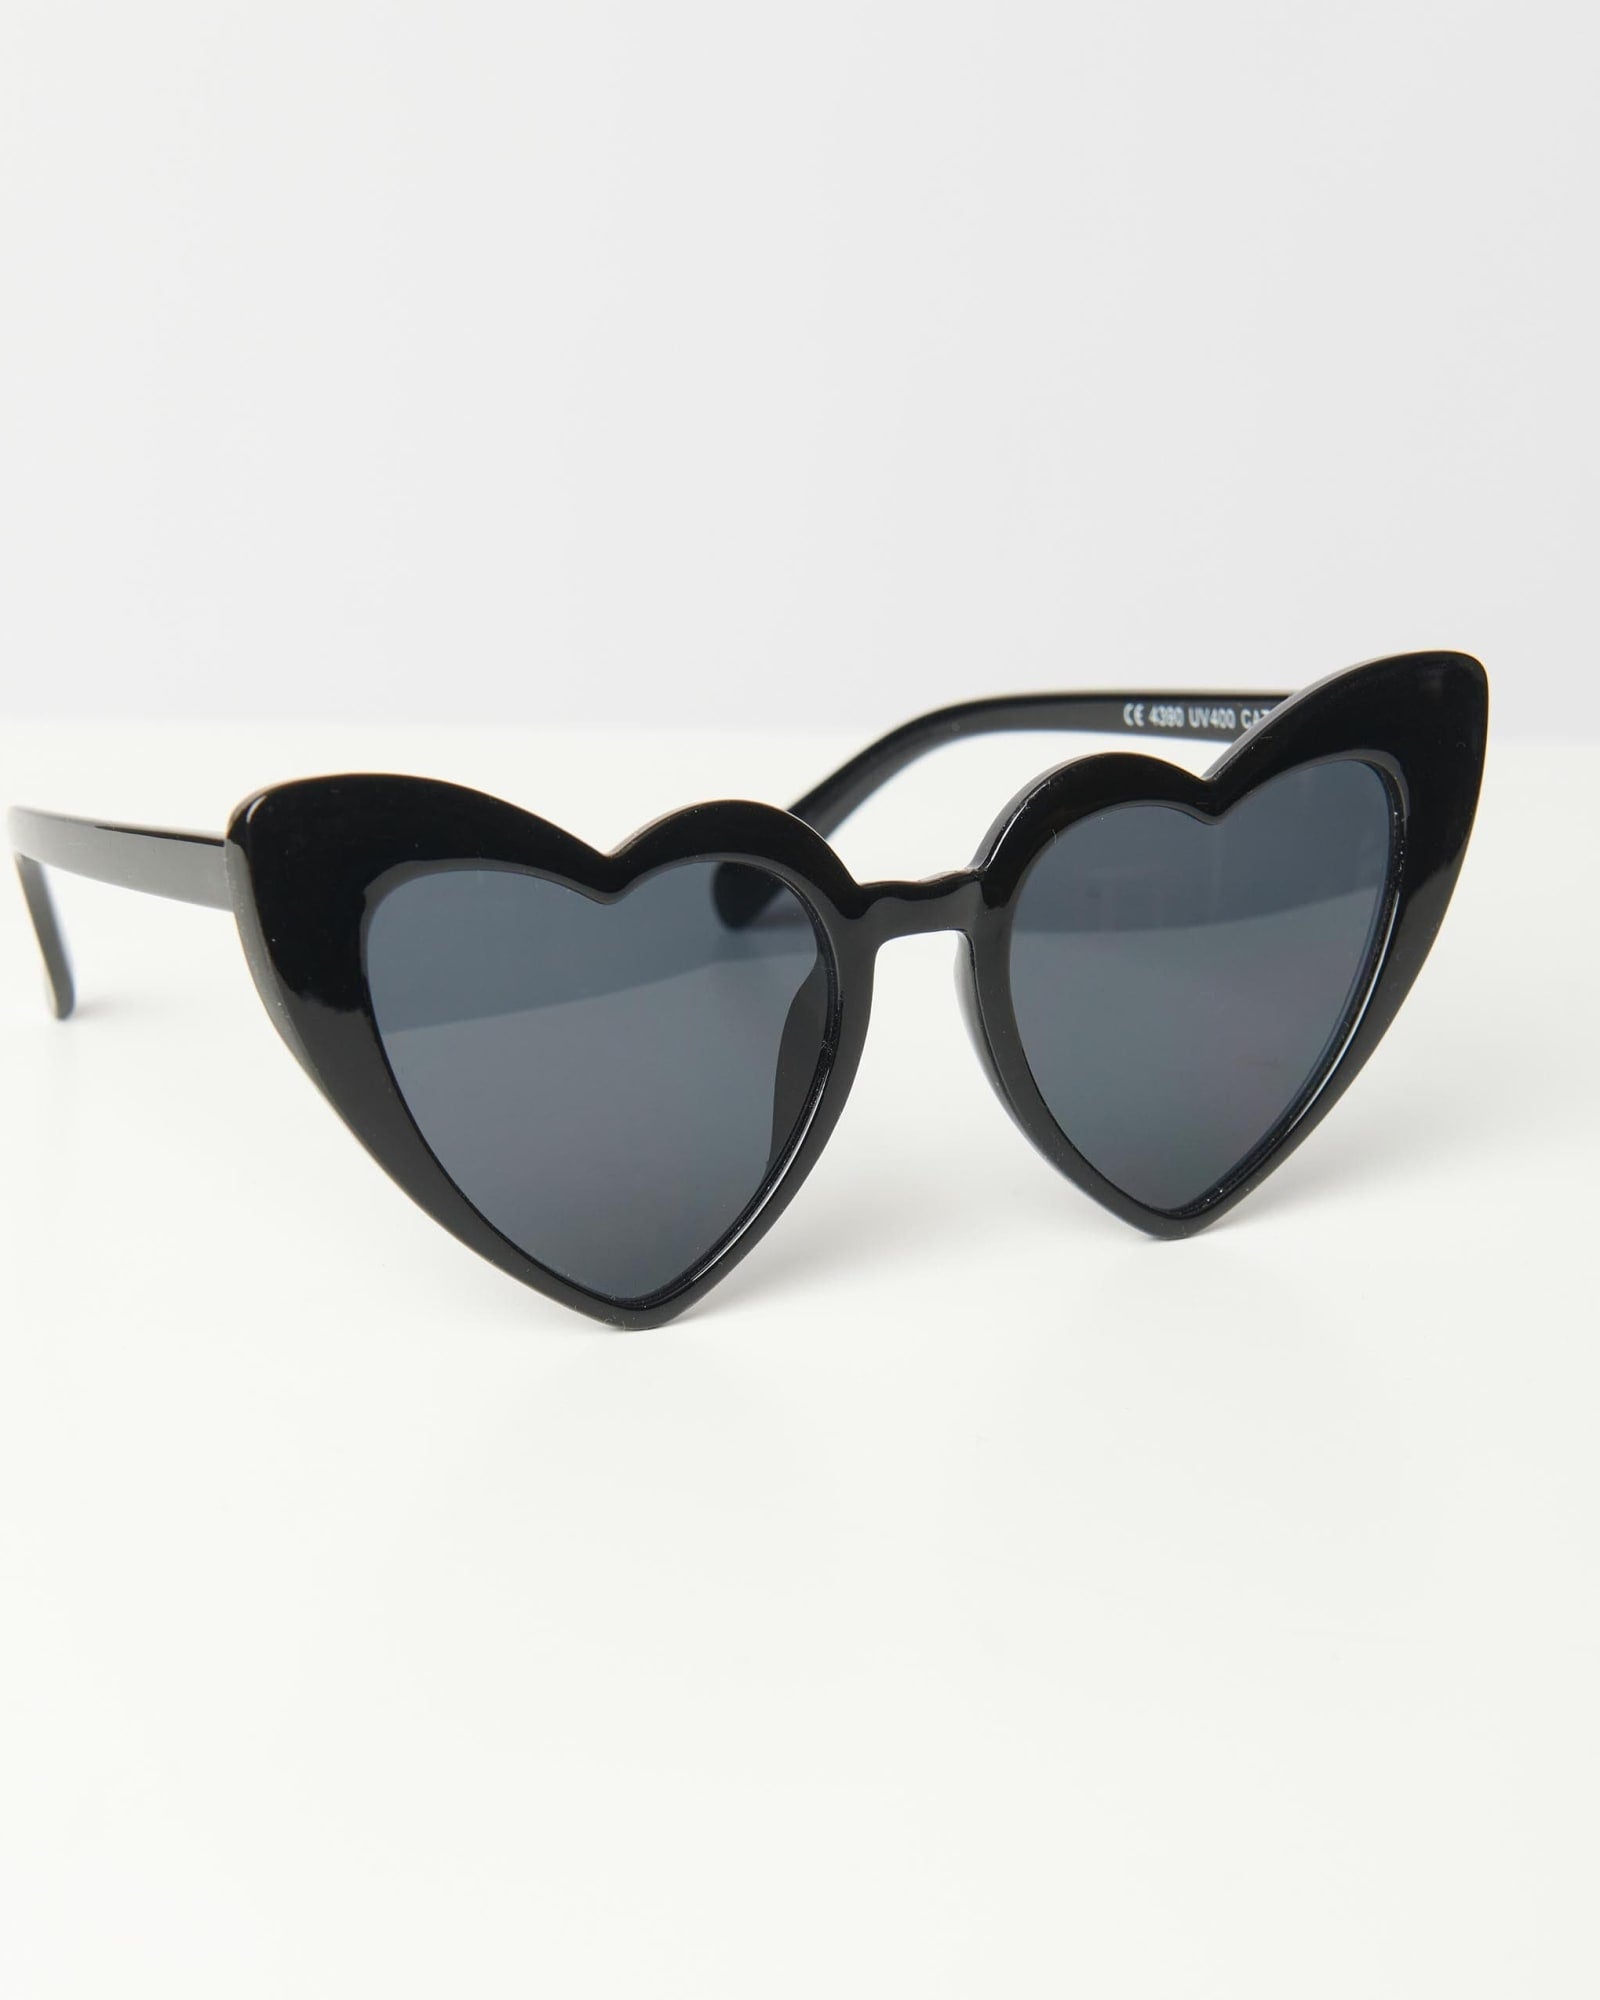 Unique Vintage Black Heart Sunglasses | Black